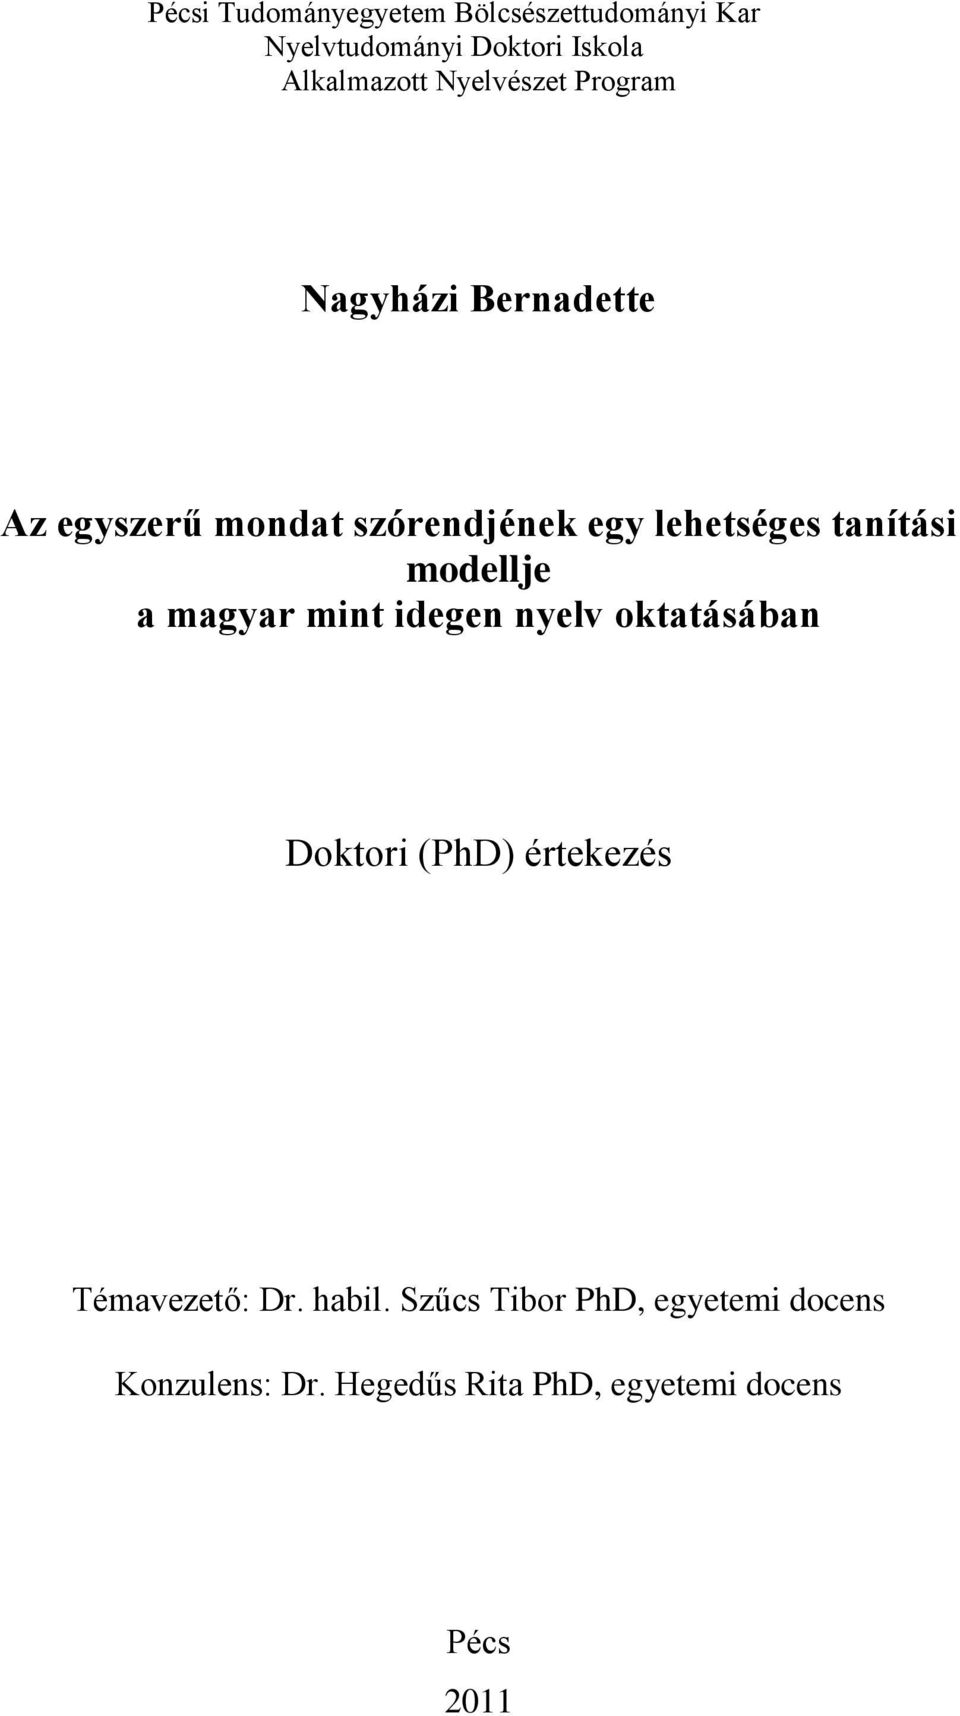 Nagyházi Bernadette. Az egyszerű mondat szórendjének egy lehetséges  tanítási modellje a magyar mint idegen nyelv oktatásában. Doktori (PhD)  értekezés - PDF Free Download